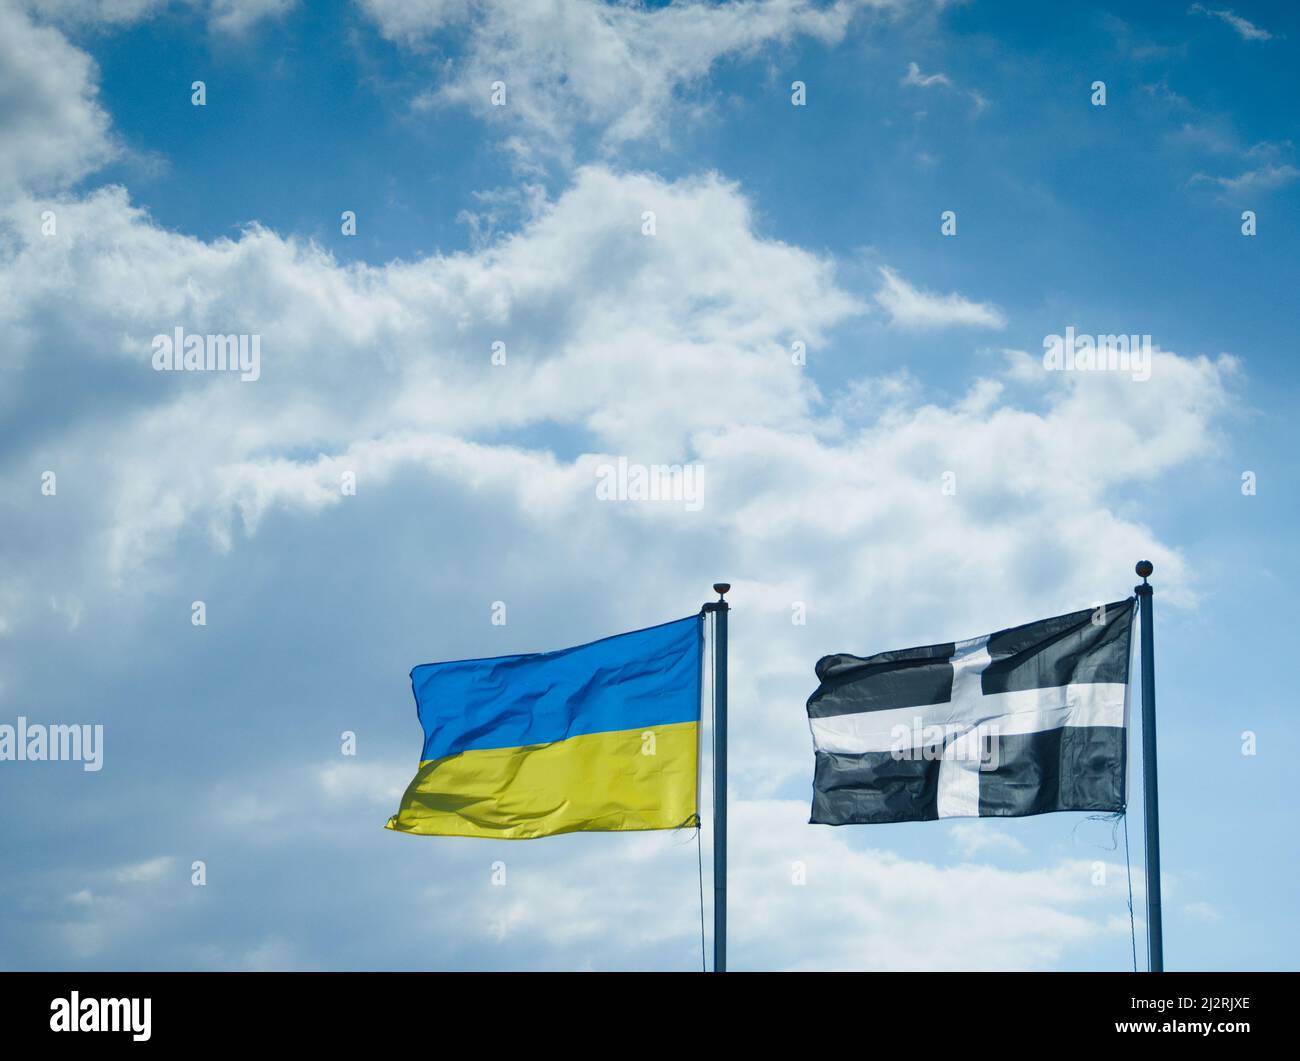 Die Flagge der Ukraine flyst neben der Flagge des kornischen Heiligen Piran gegen einen wolkig blauen Himmel. Menschen in Cornwall in Solidarität mit den Menschen in der Ukraine. Stockfoto